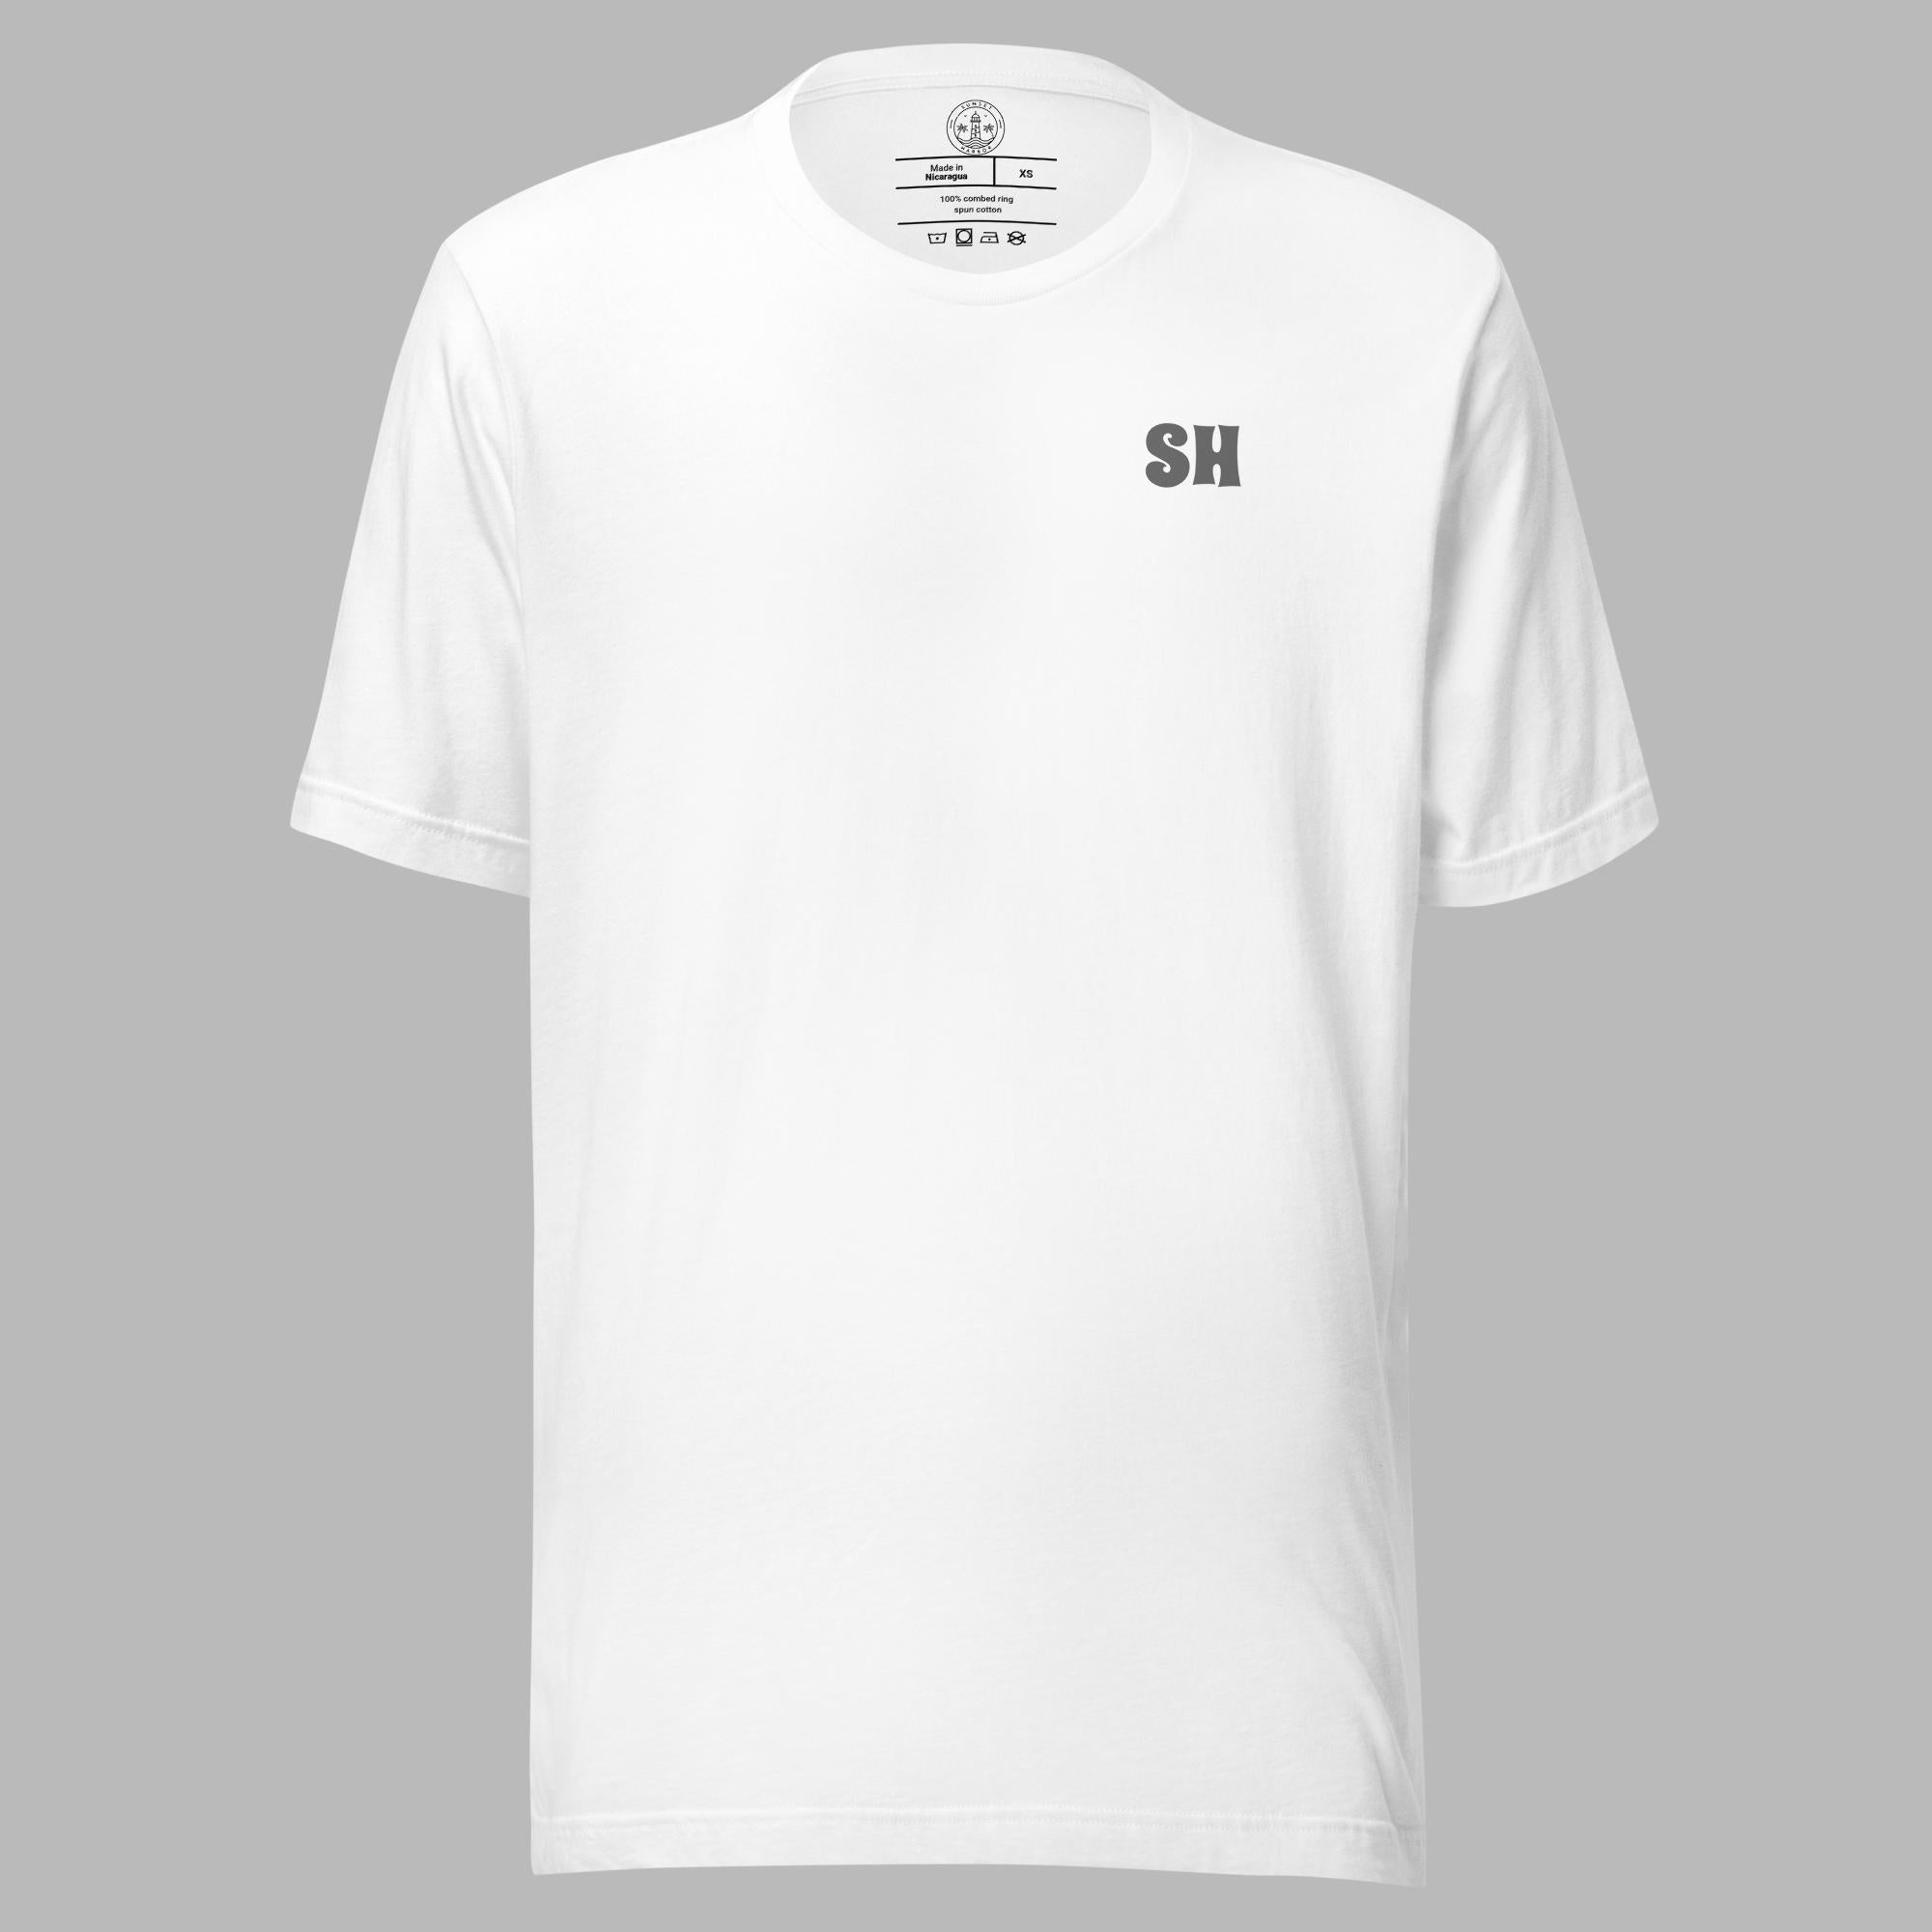 Camiseta básica unisex - SH